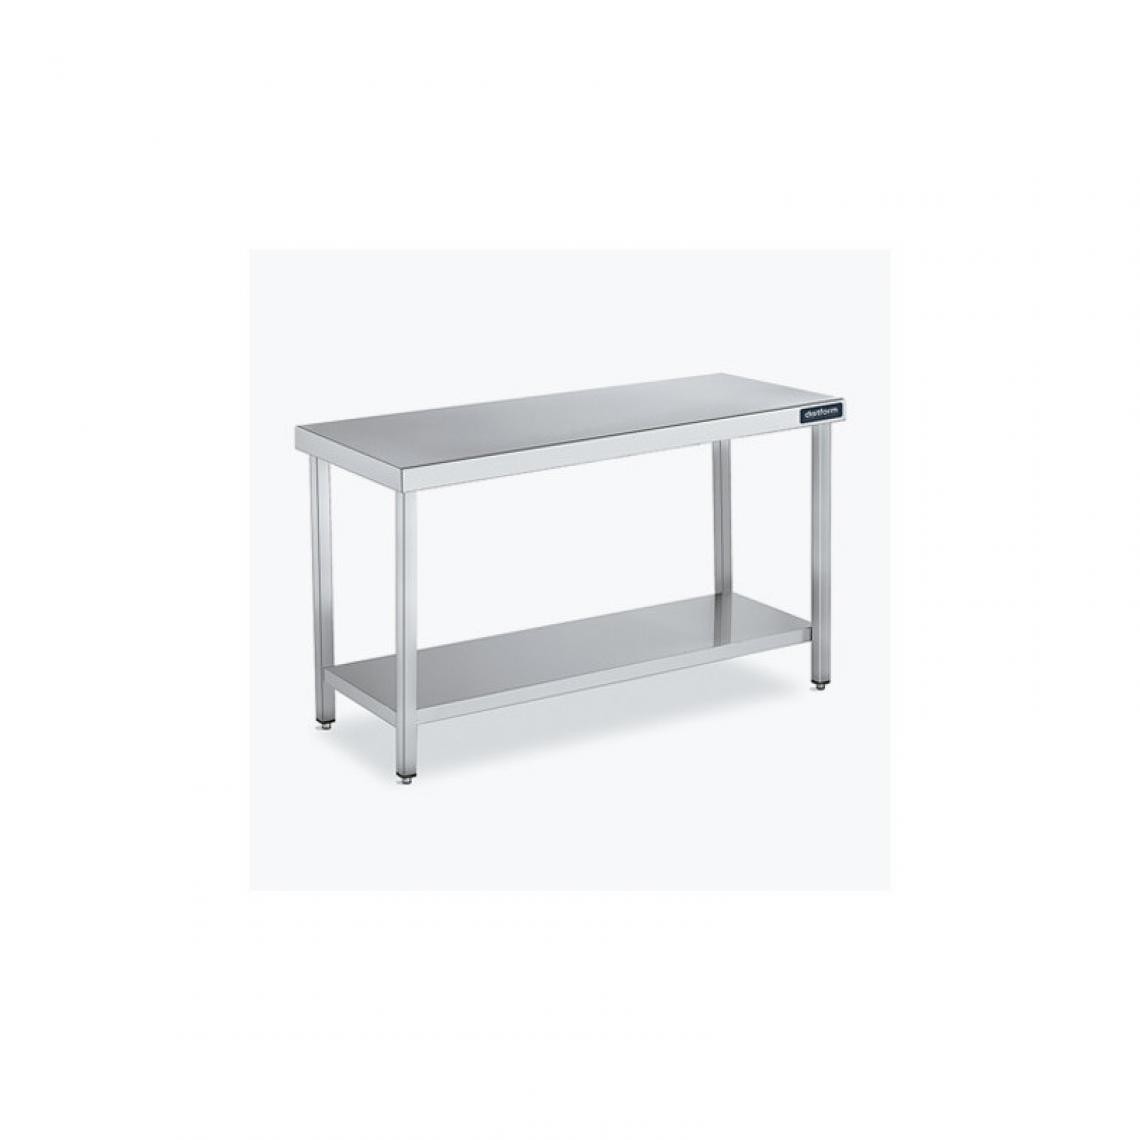 DISTFORM - Table Centrale 600x900 avec Étagère - Distform - Inox 18/101400x900x850mm - Tables à manger